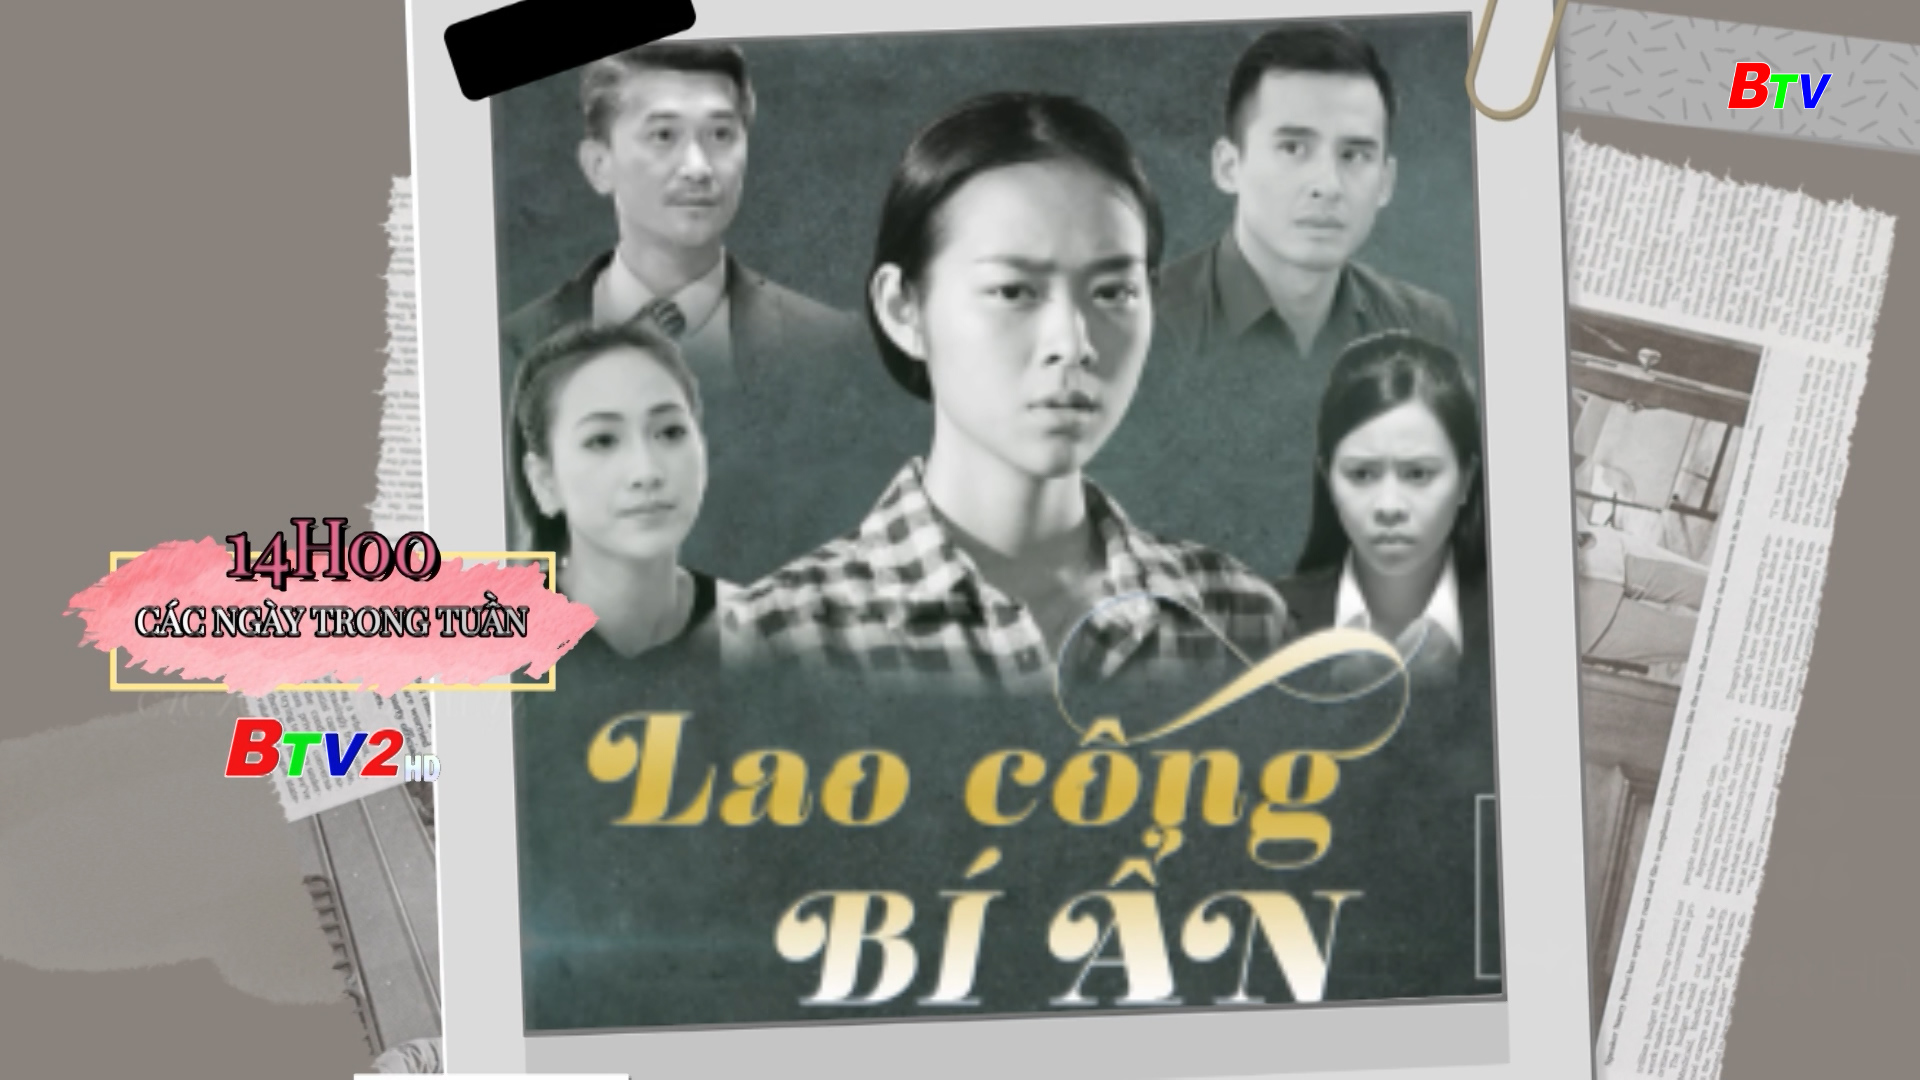 Phim Việt Nam: Lao công bí ẩn